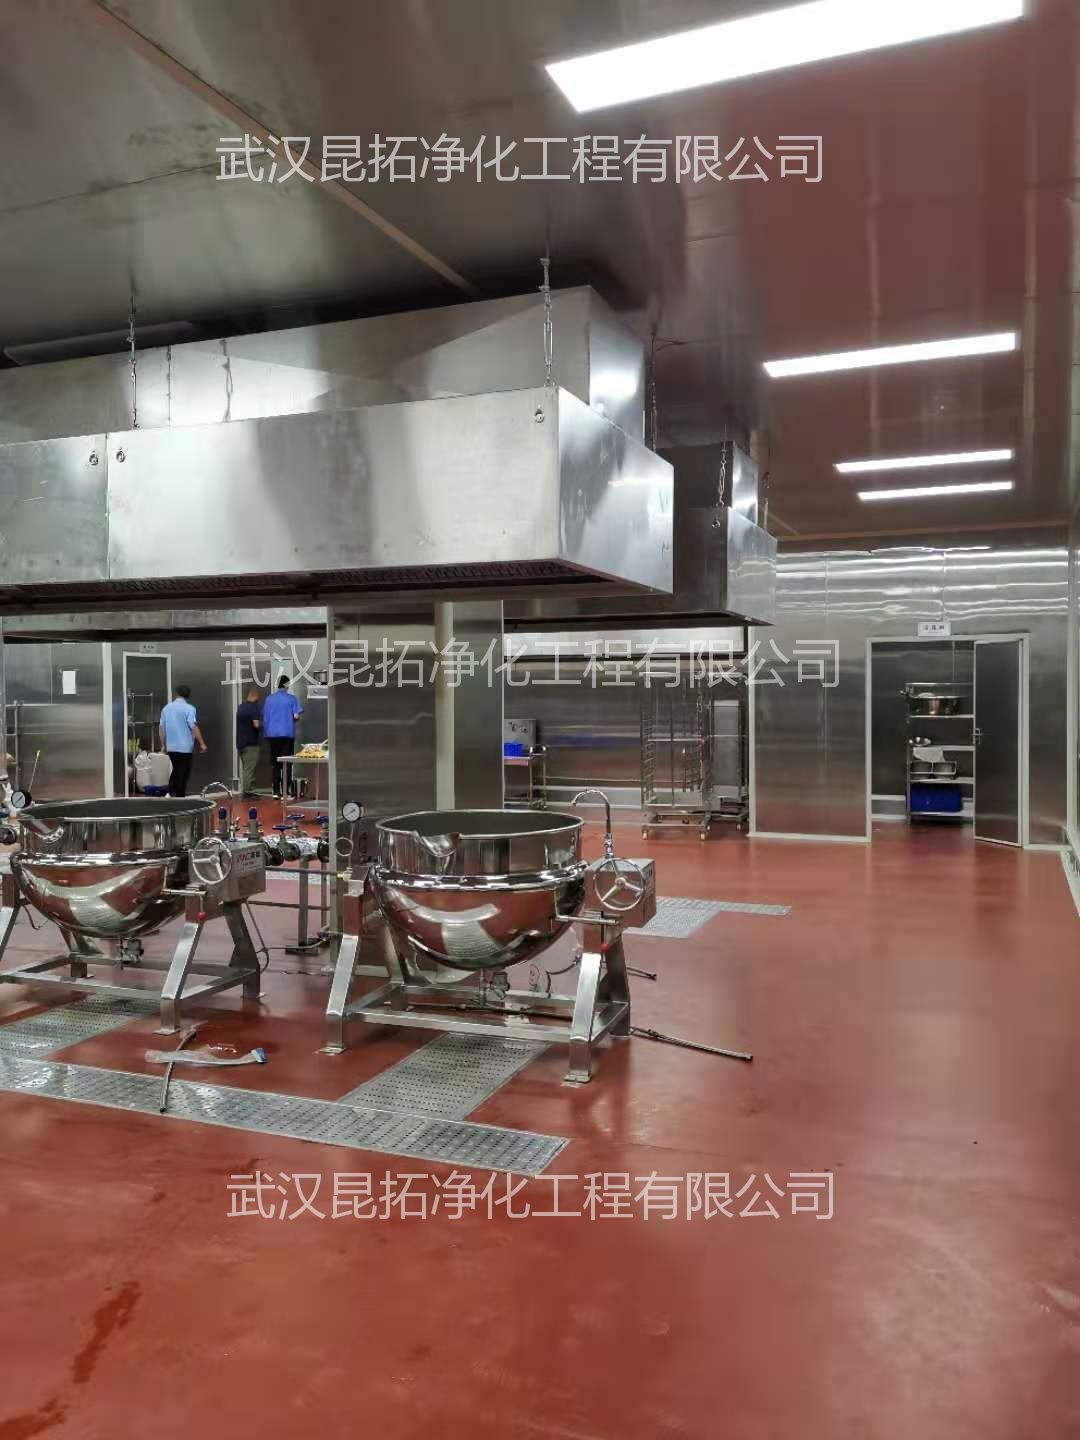 武汉中慧心良源食品有限公司新建中央厨房2.jpg